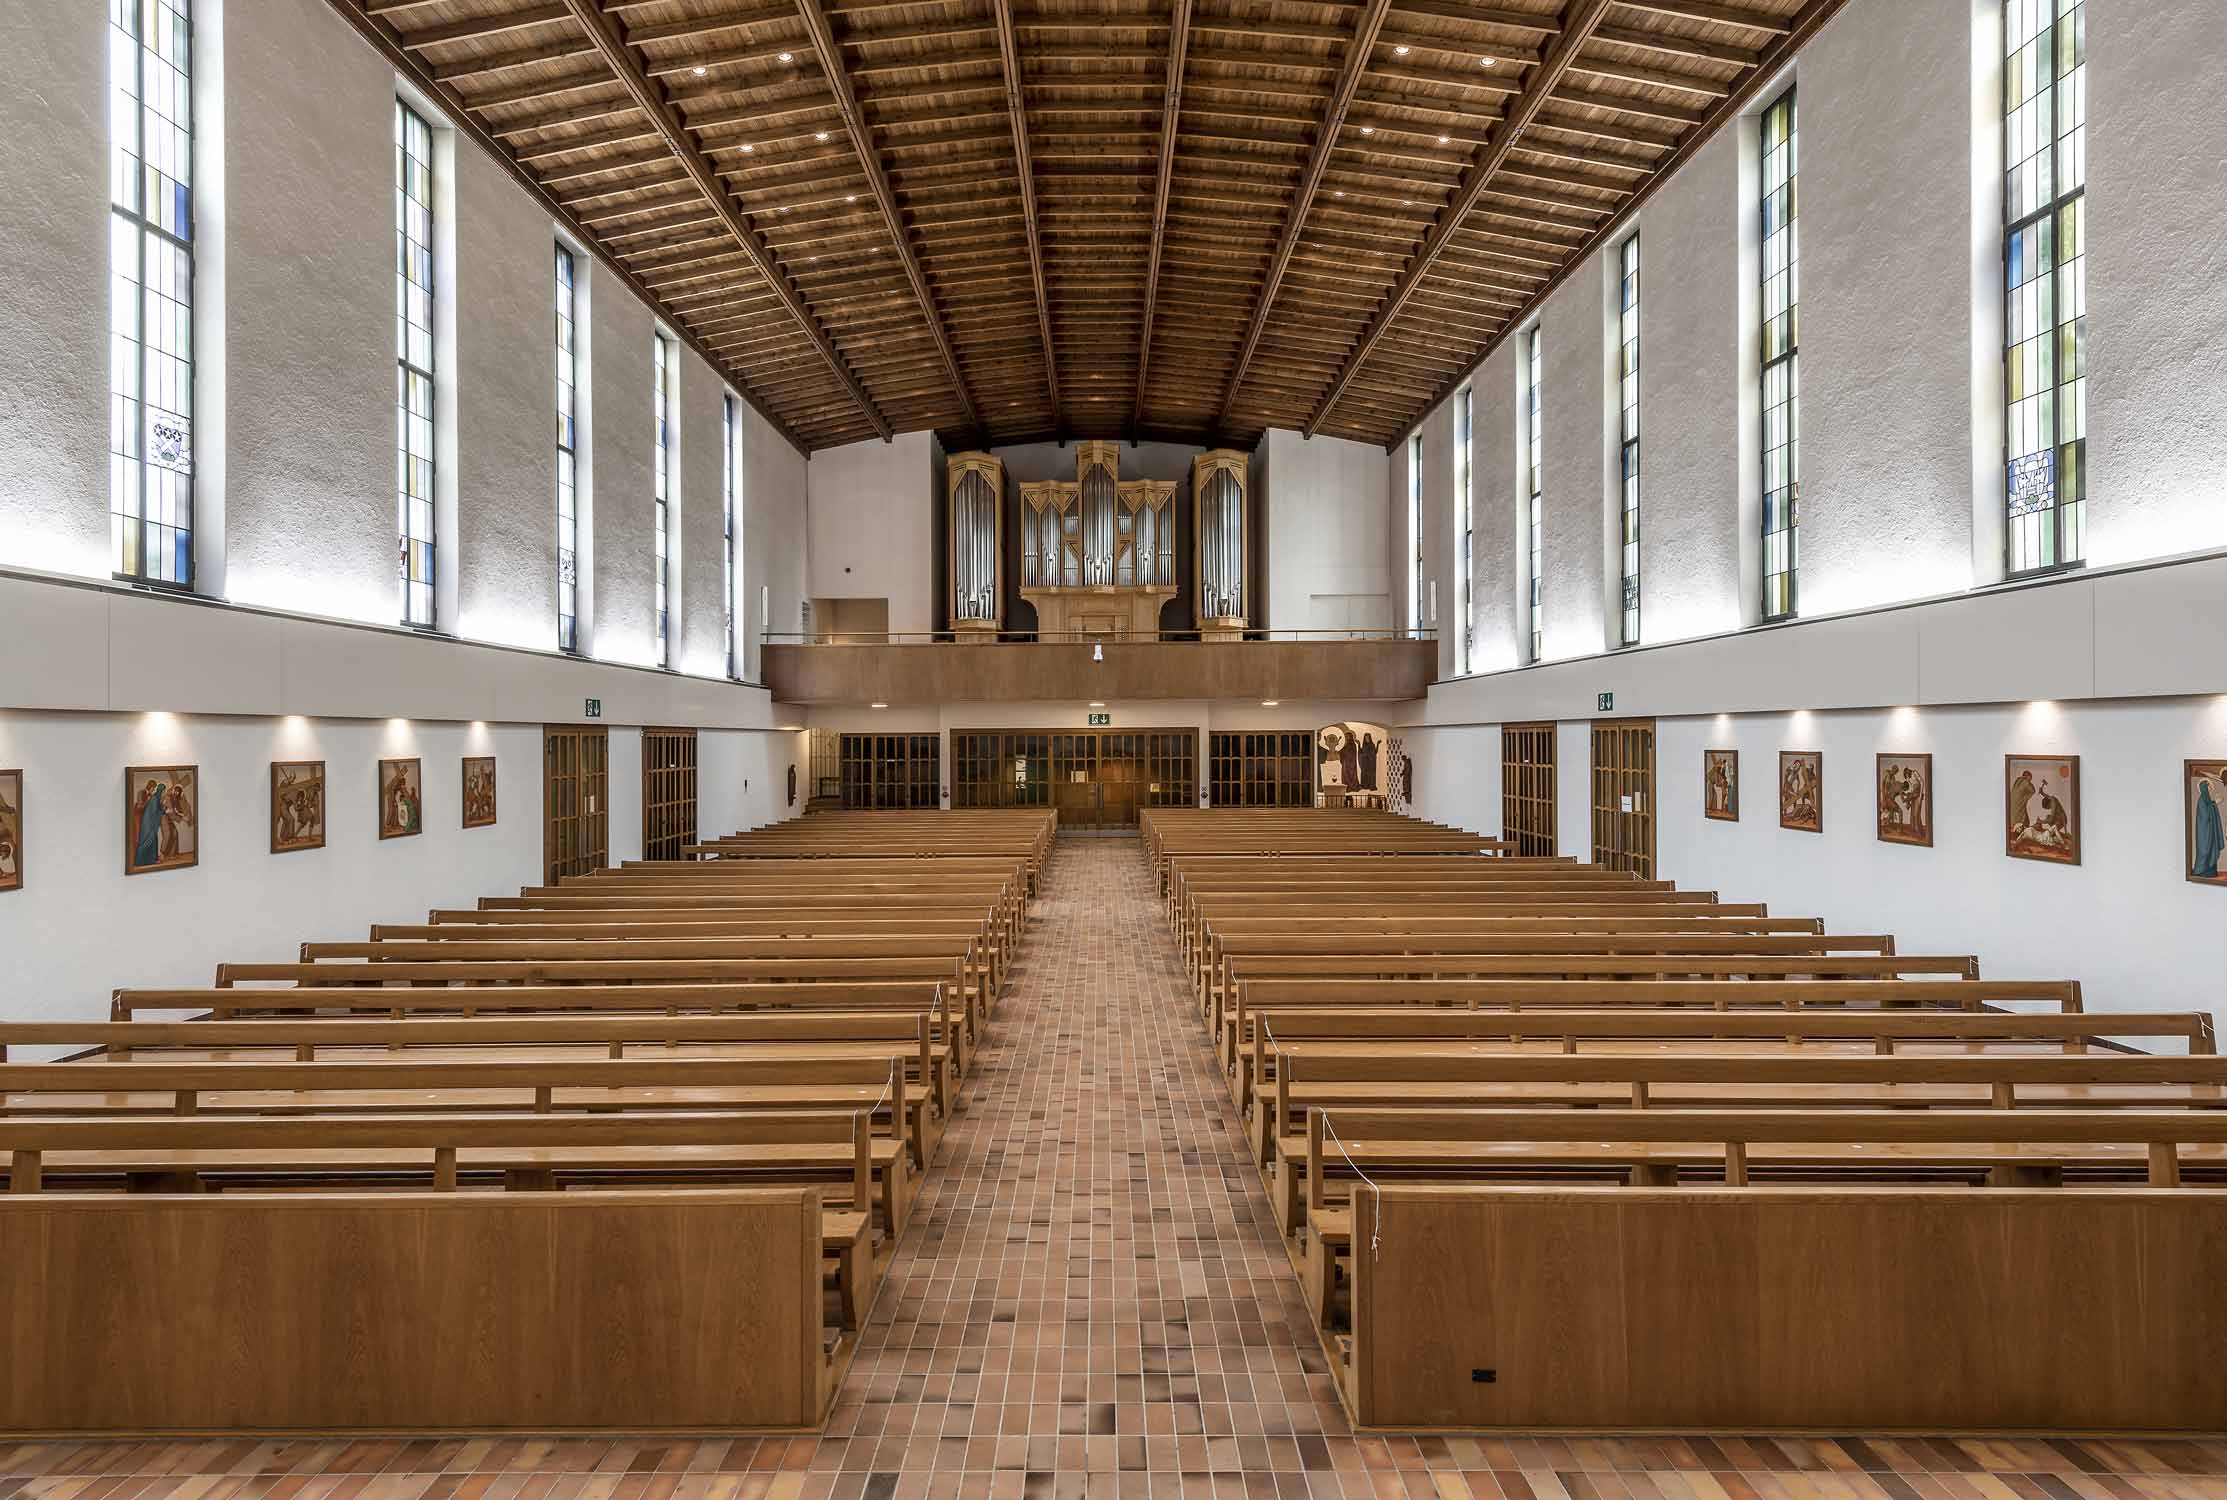 Innenraum mit Orgel, Pfarrkirche Gut Hirt in Zug. Fotografiert von Regine Giesecke Architecture Photography GmbH